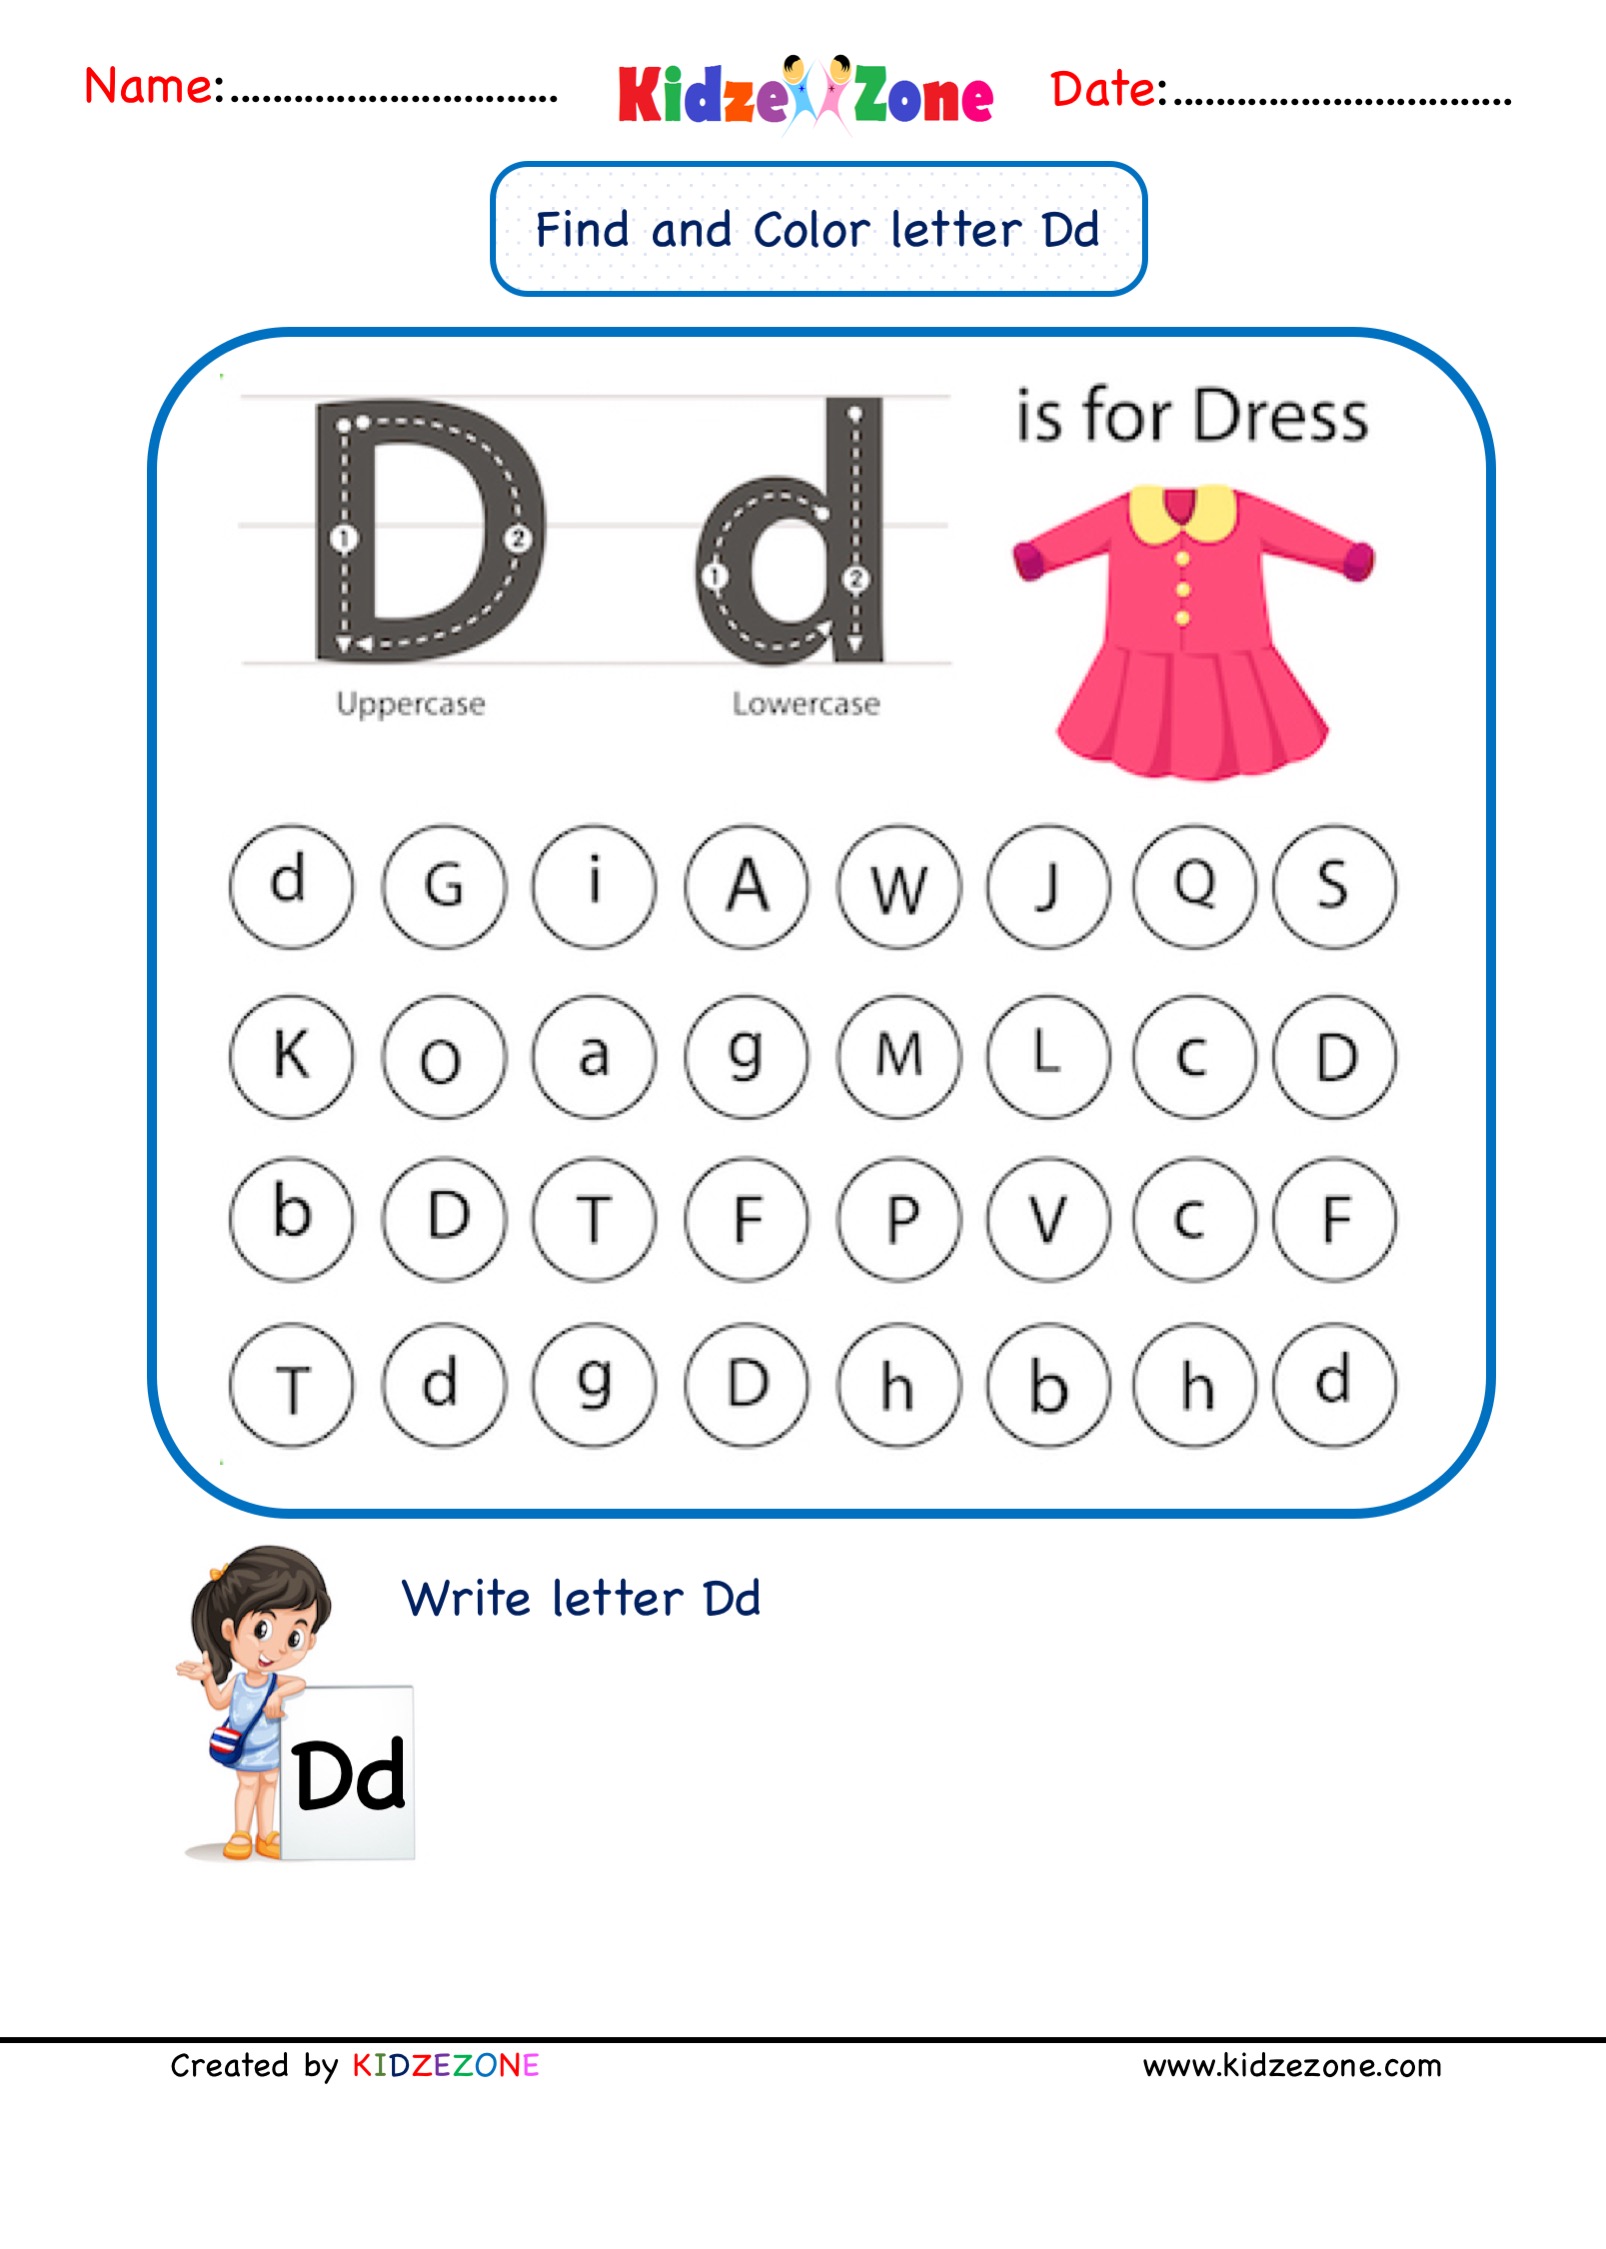 Kindergarten Letter D Find and Color Worksheet - KidzeZone Pertaining To Letter D Worksheet For Preschool